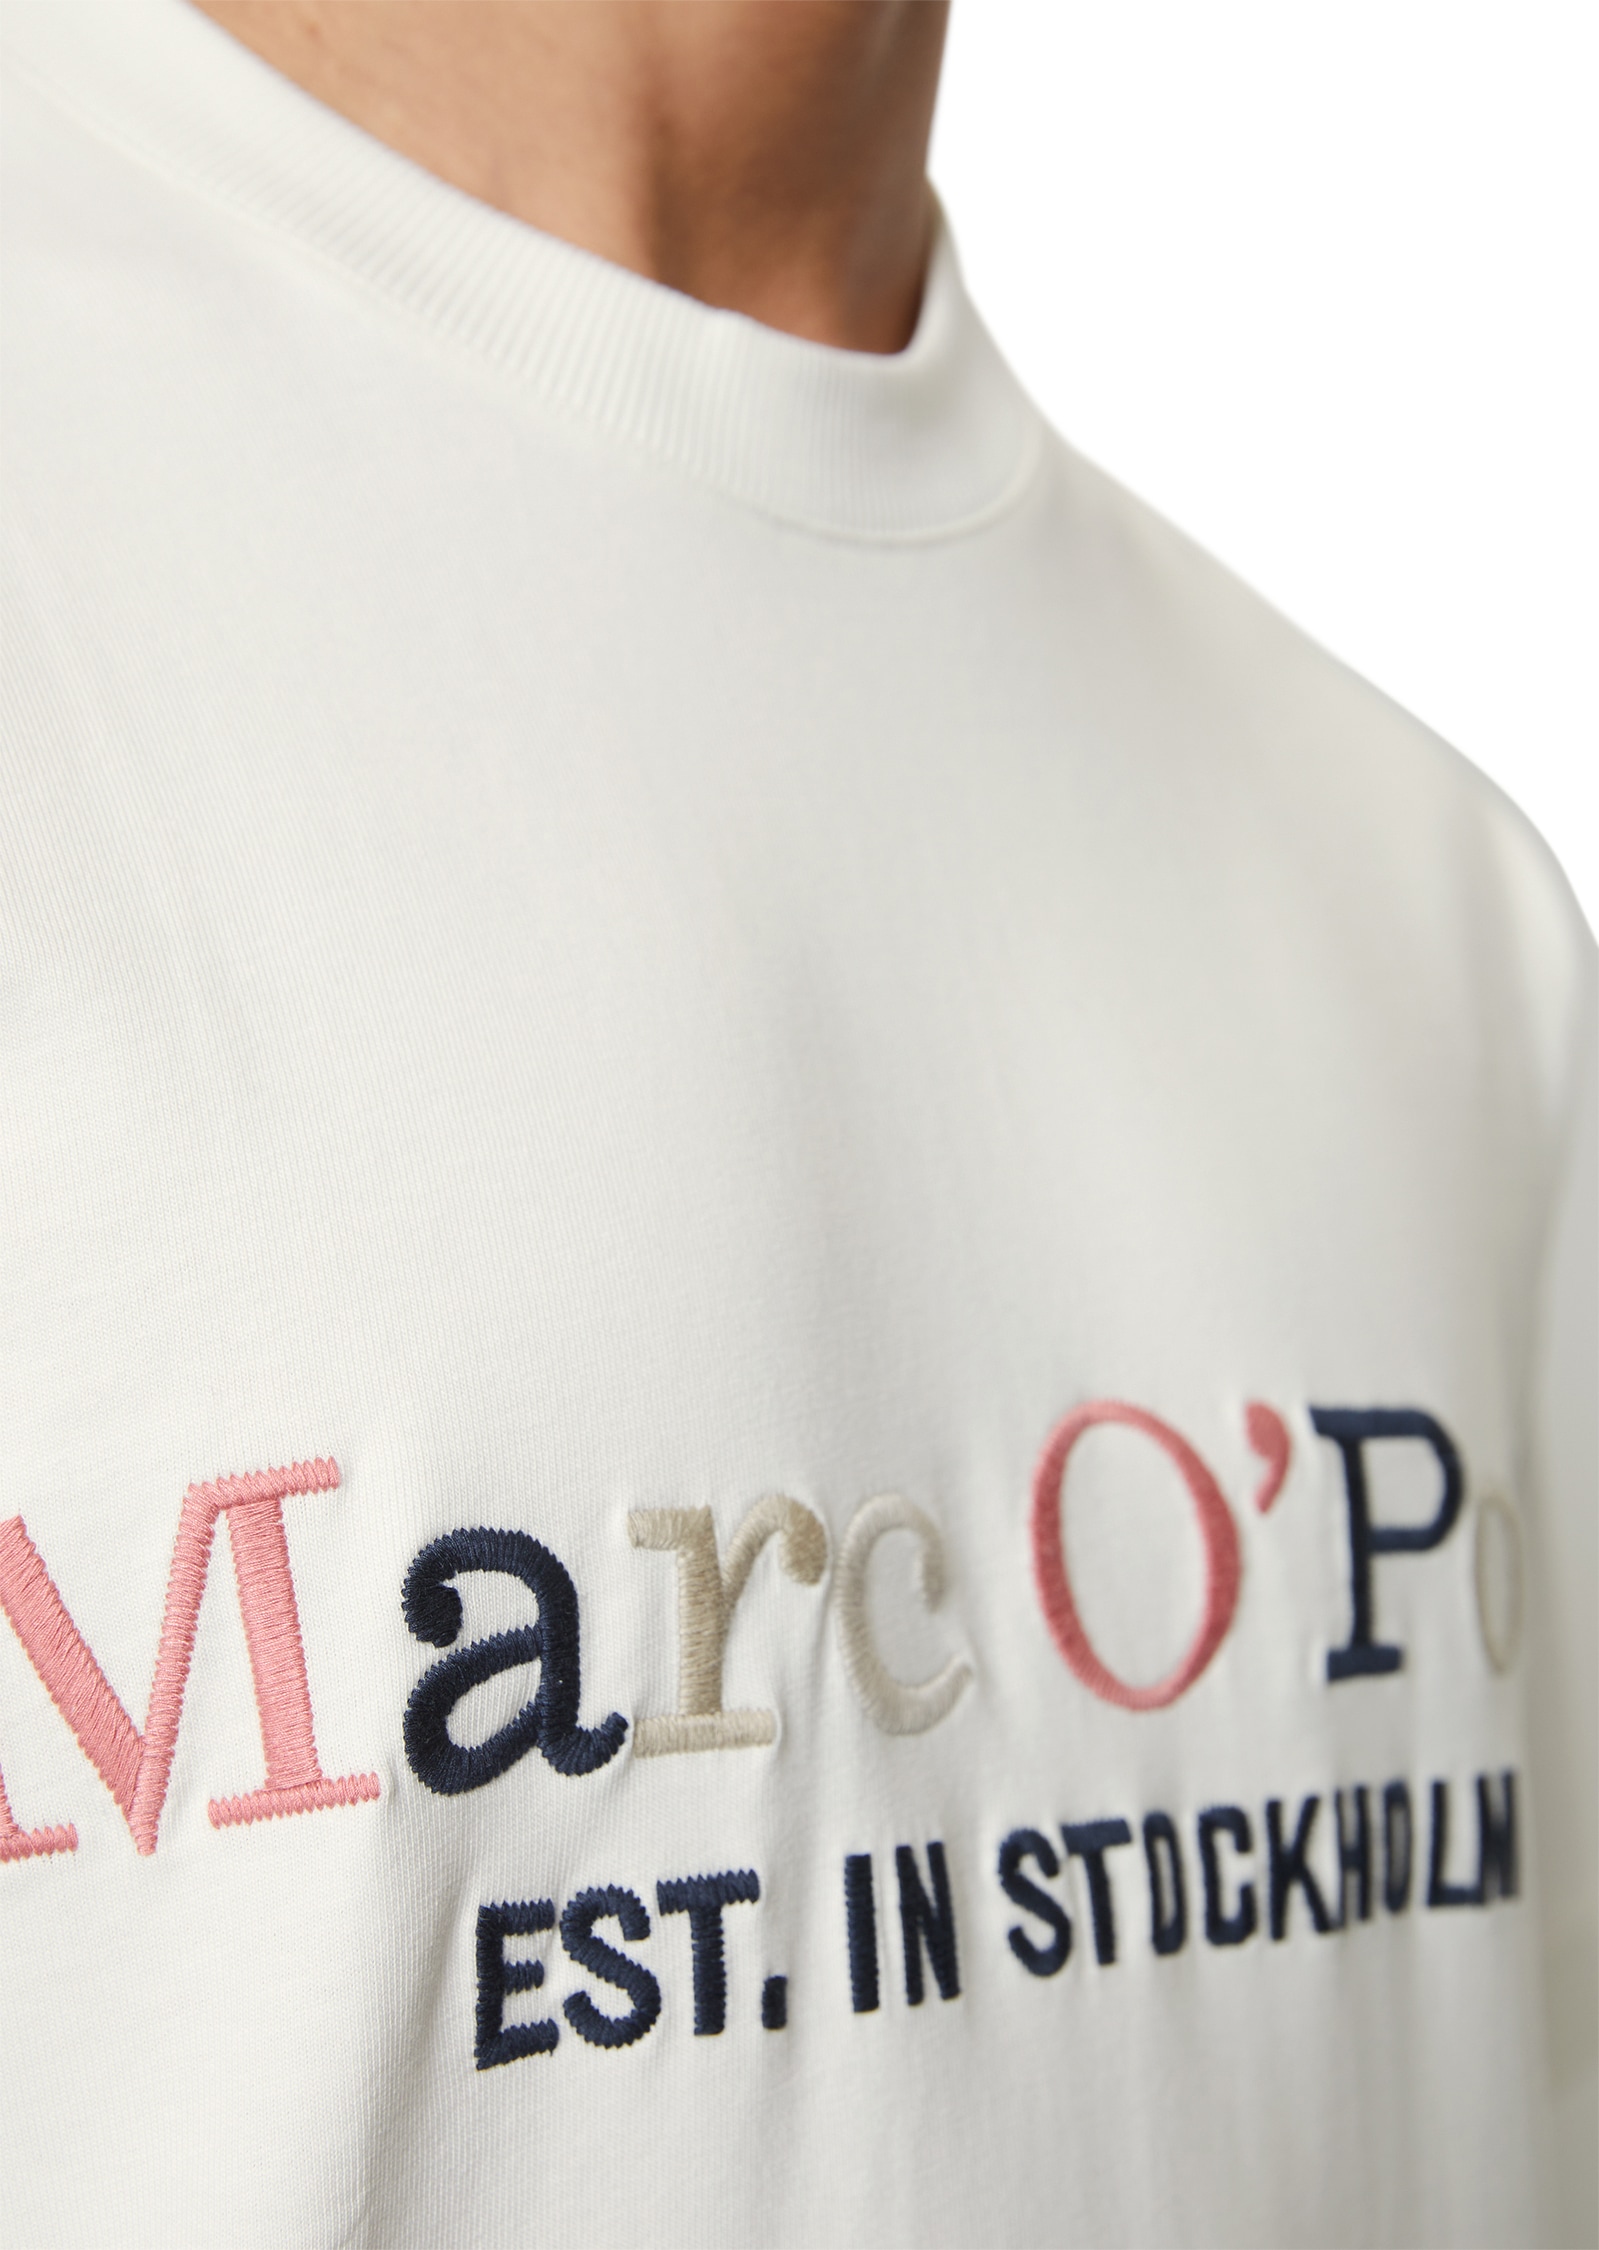 Marc O'Polo T-Shirt, mehrfarbiger Print